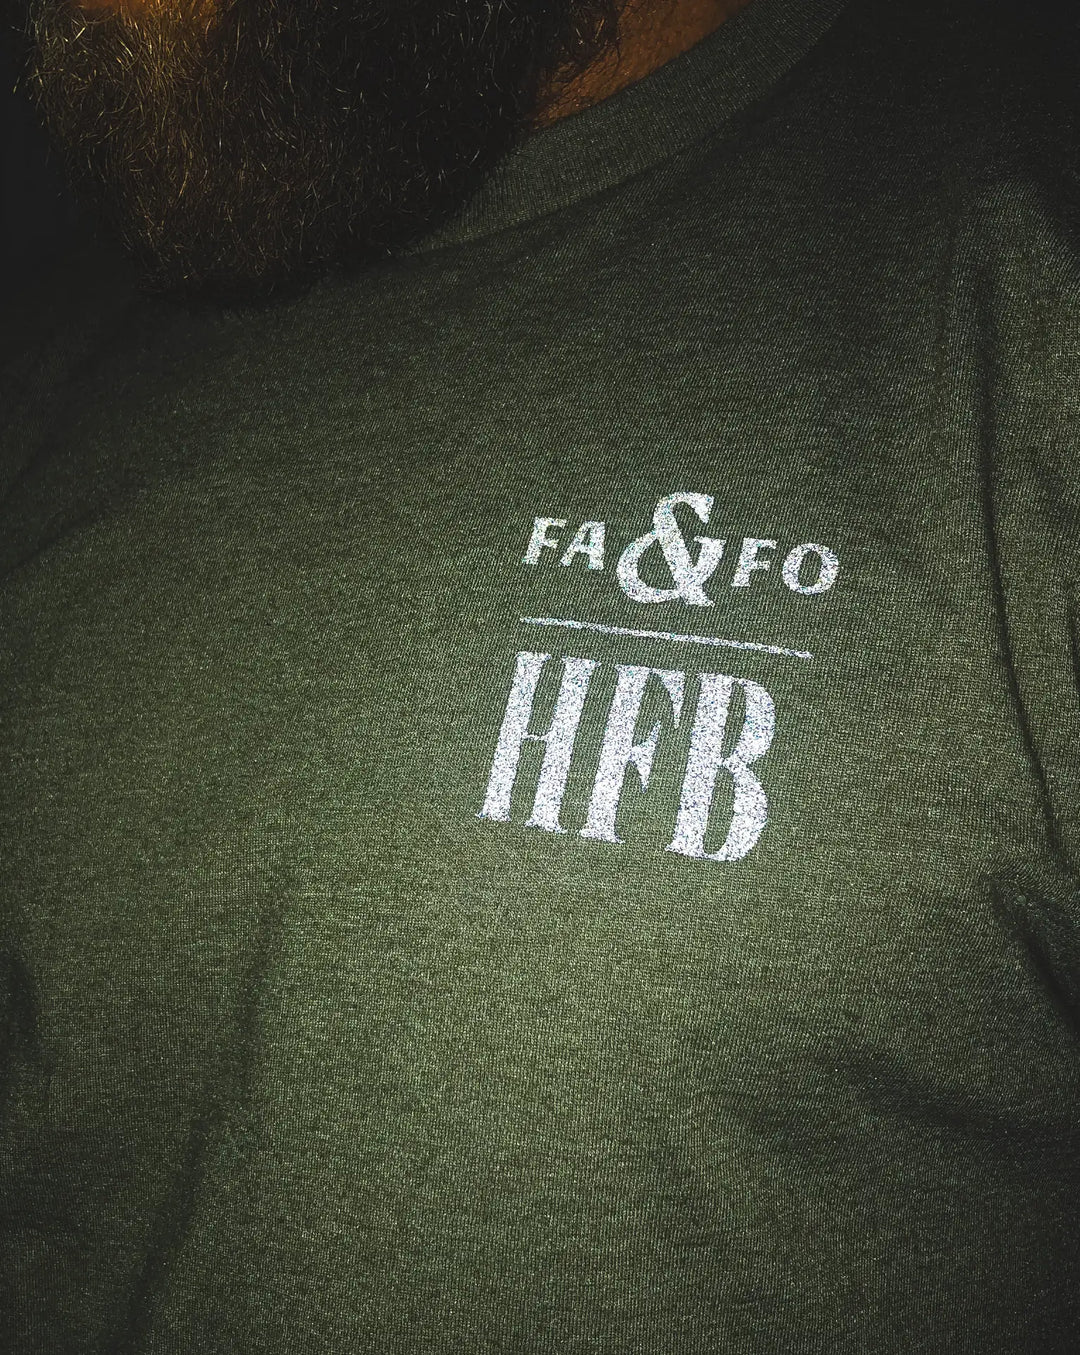 FAFO x HFB Tee - Giveaway Eligible